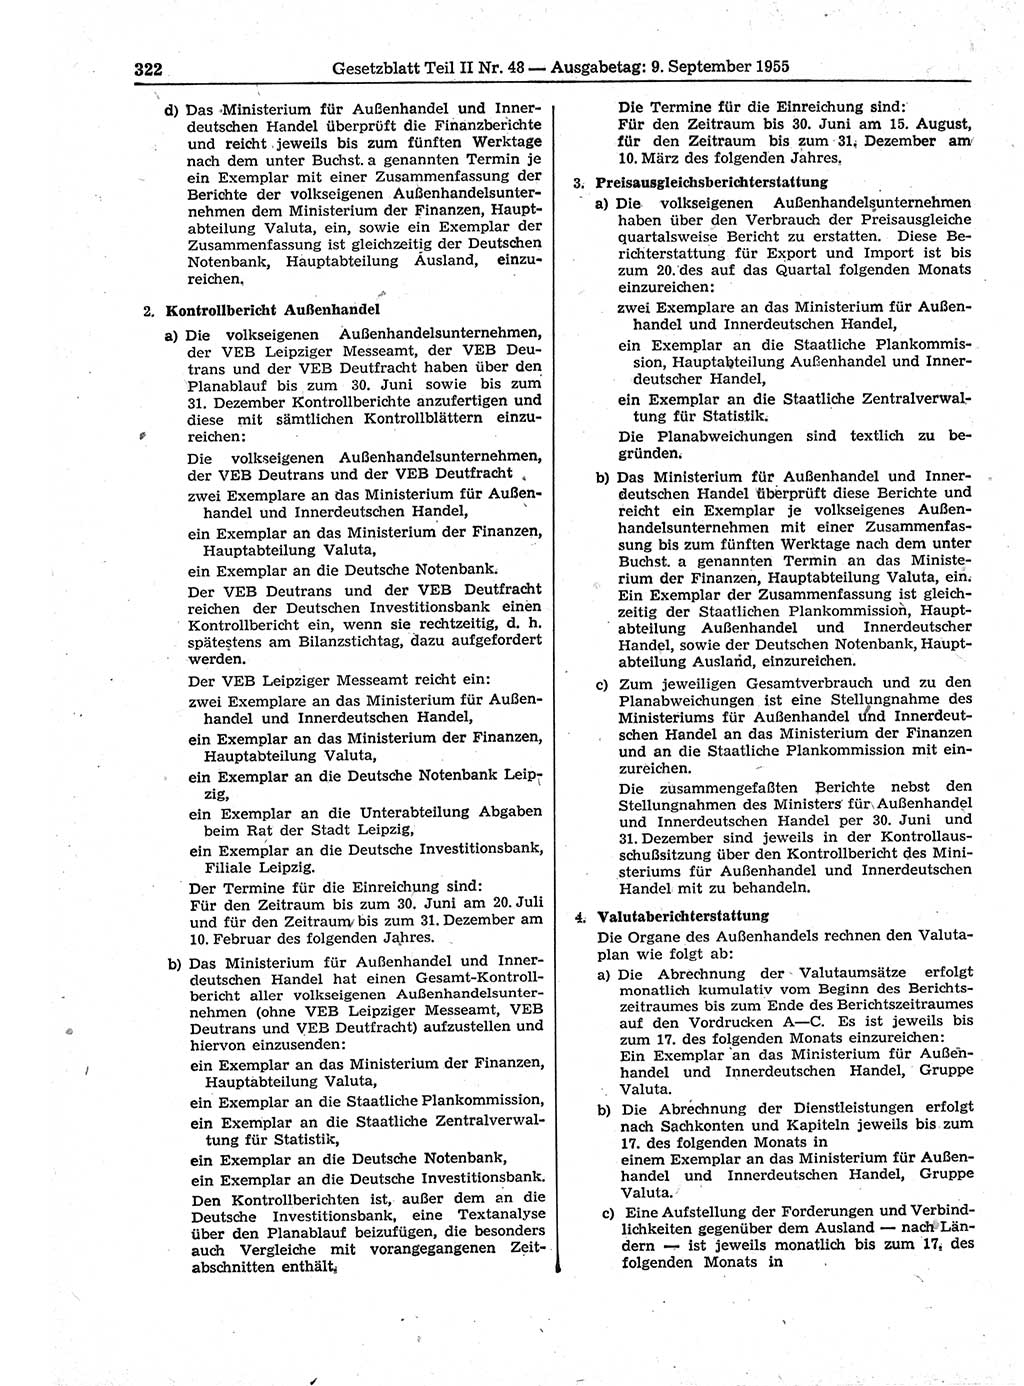 Gesetzblatt (GBl.) der Deutschen Demokratischen Republik (DDR) Teil ⅠⅠ 1955, Seite 322 (GBl. DDR ⅠⅠ 1955, S. 322)